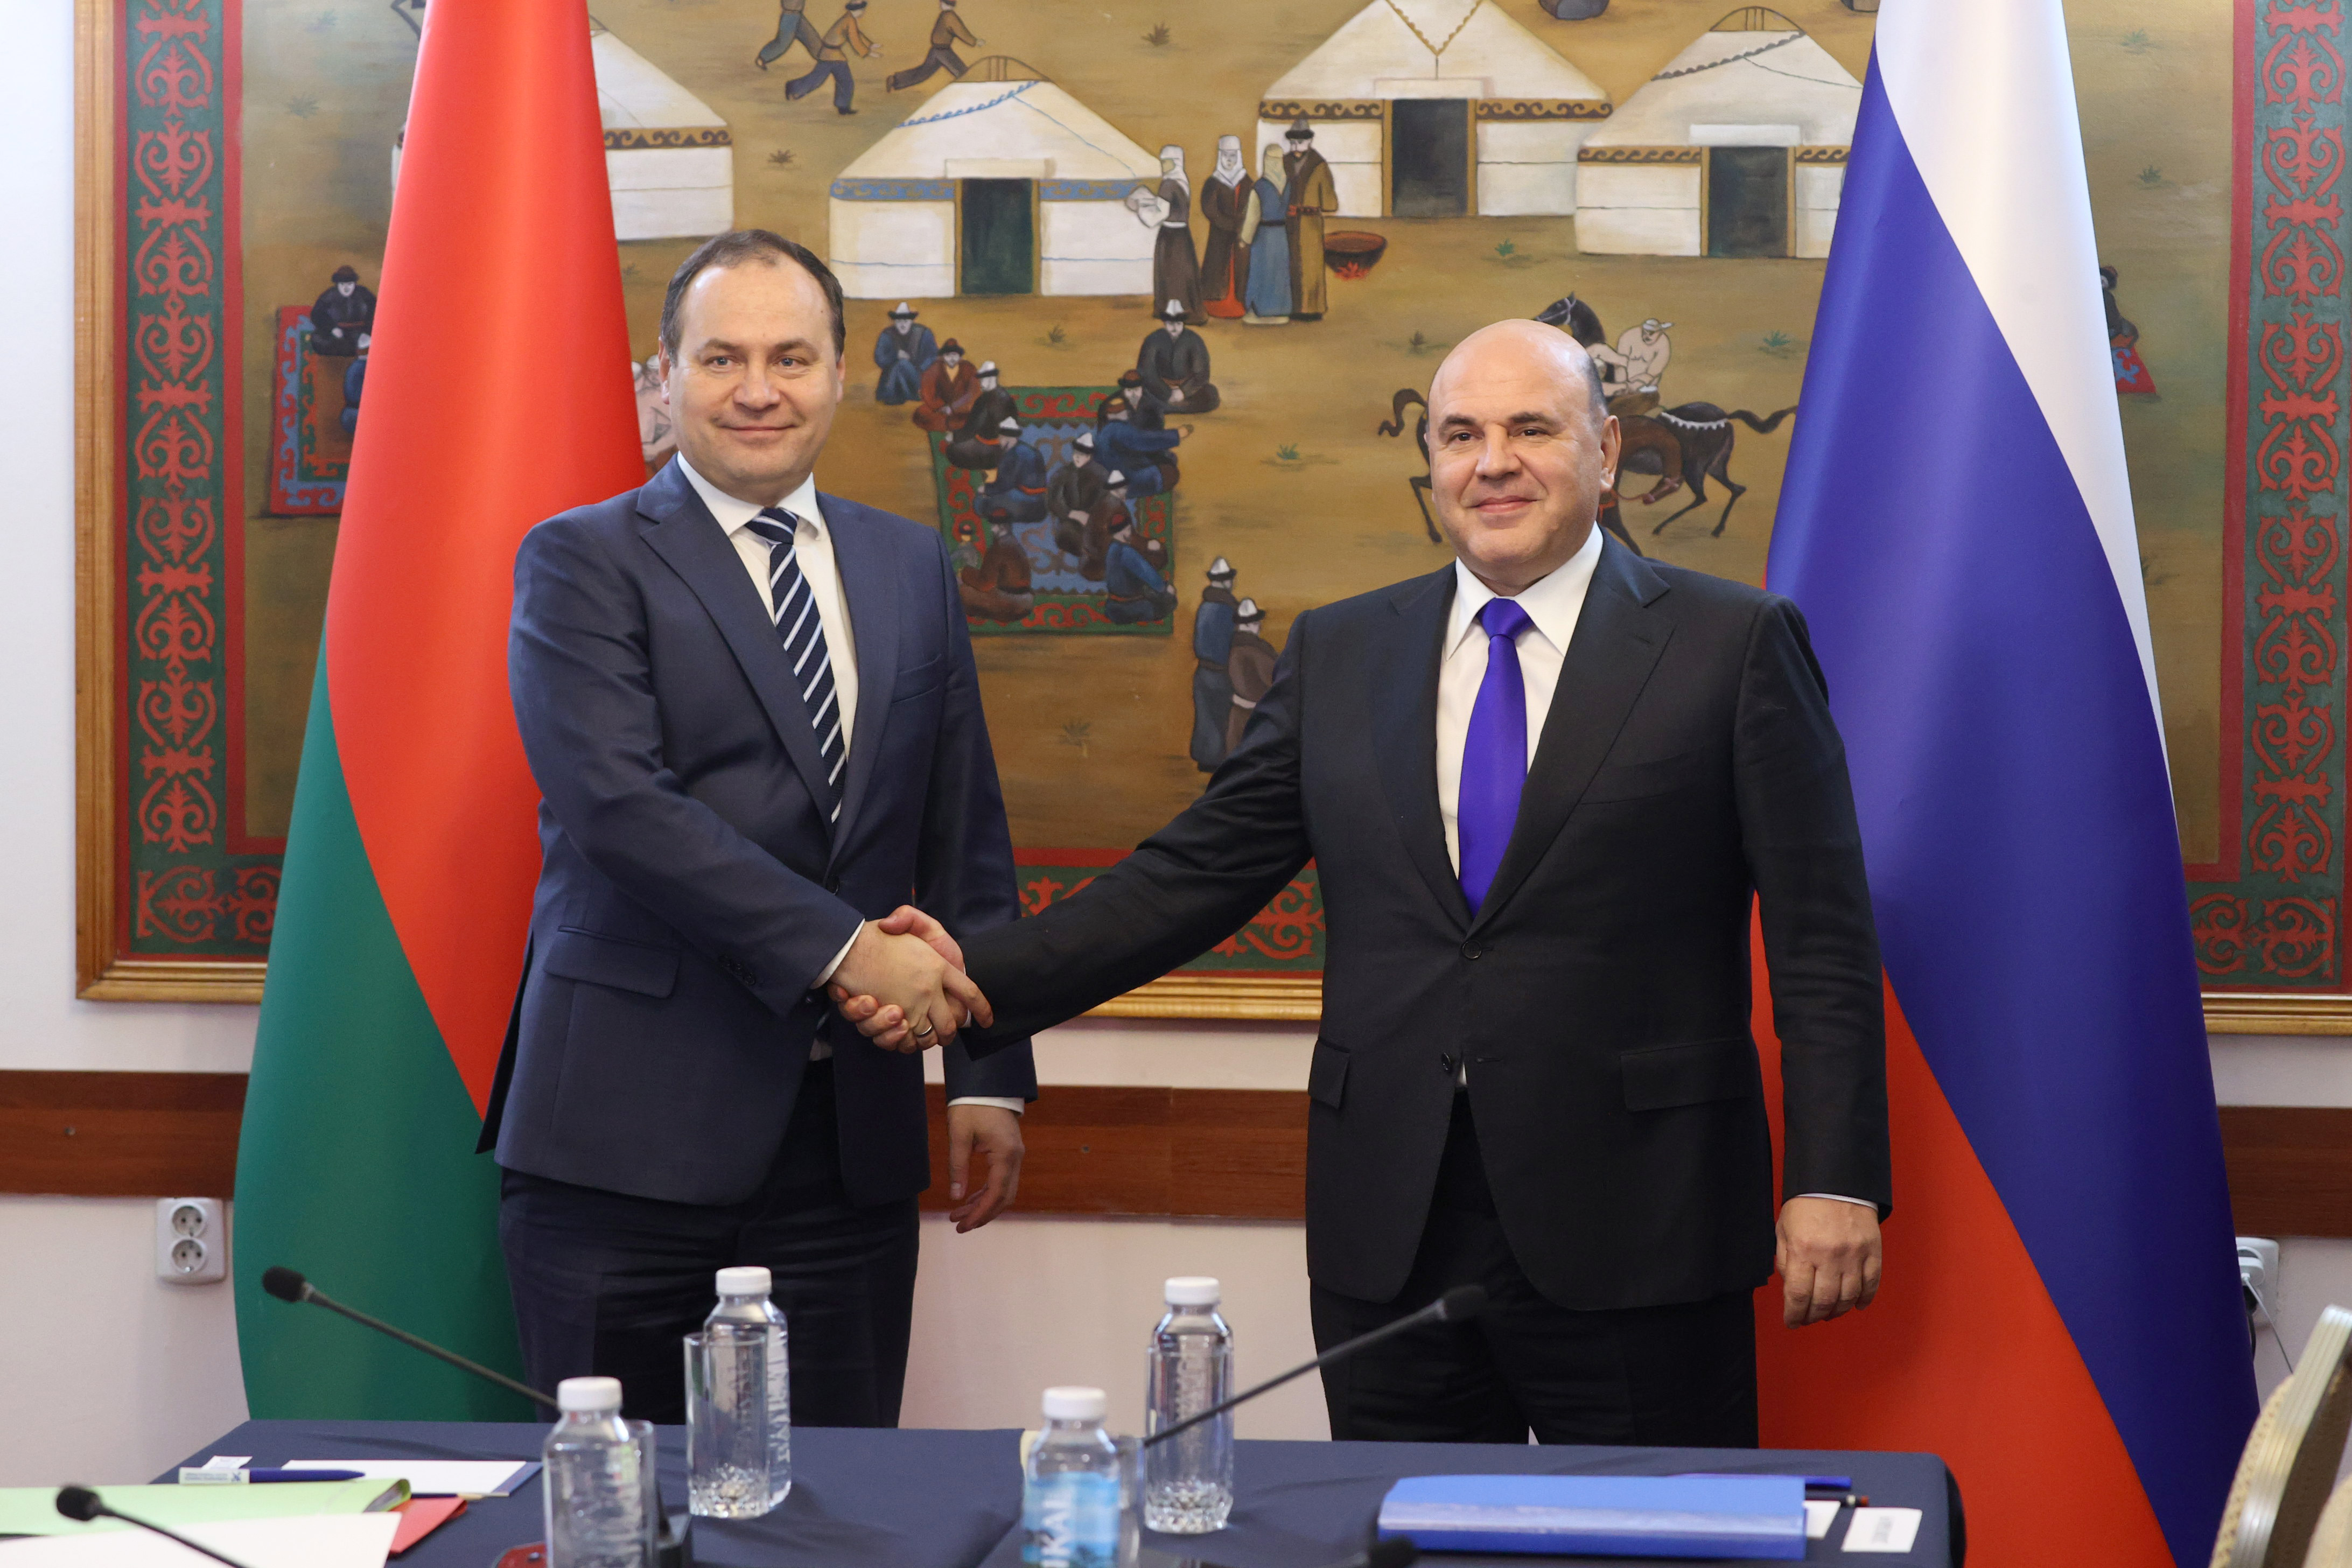 Главы правительств России и Беларуси  провели встречу на полях заседания Евразийского межправительственного совета